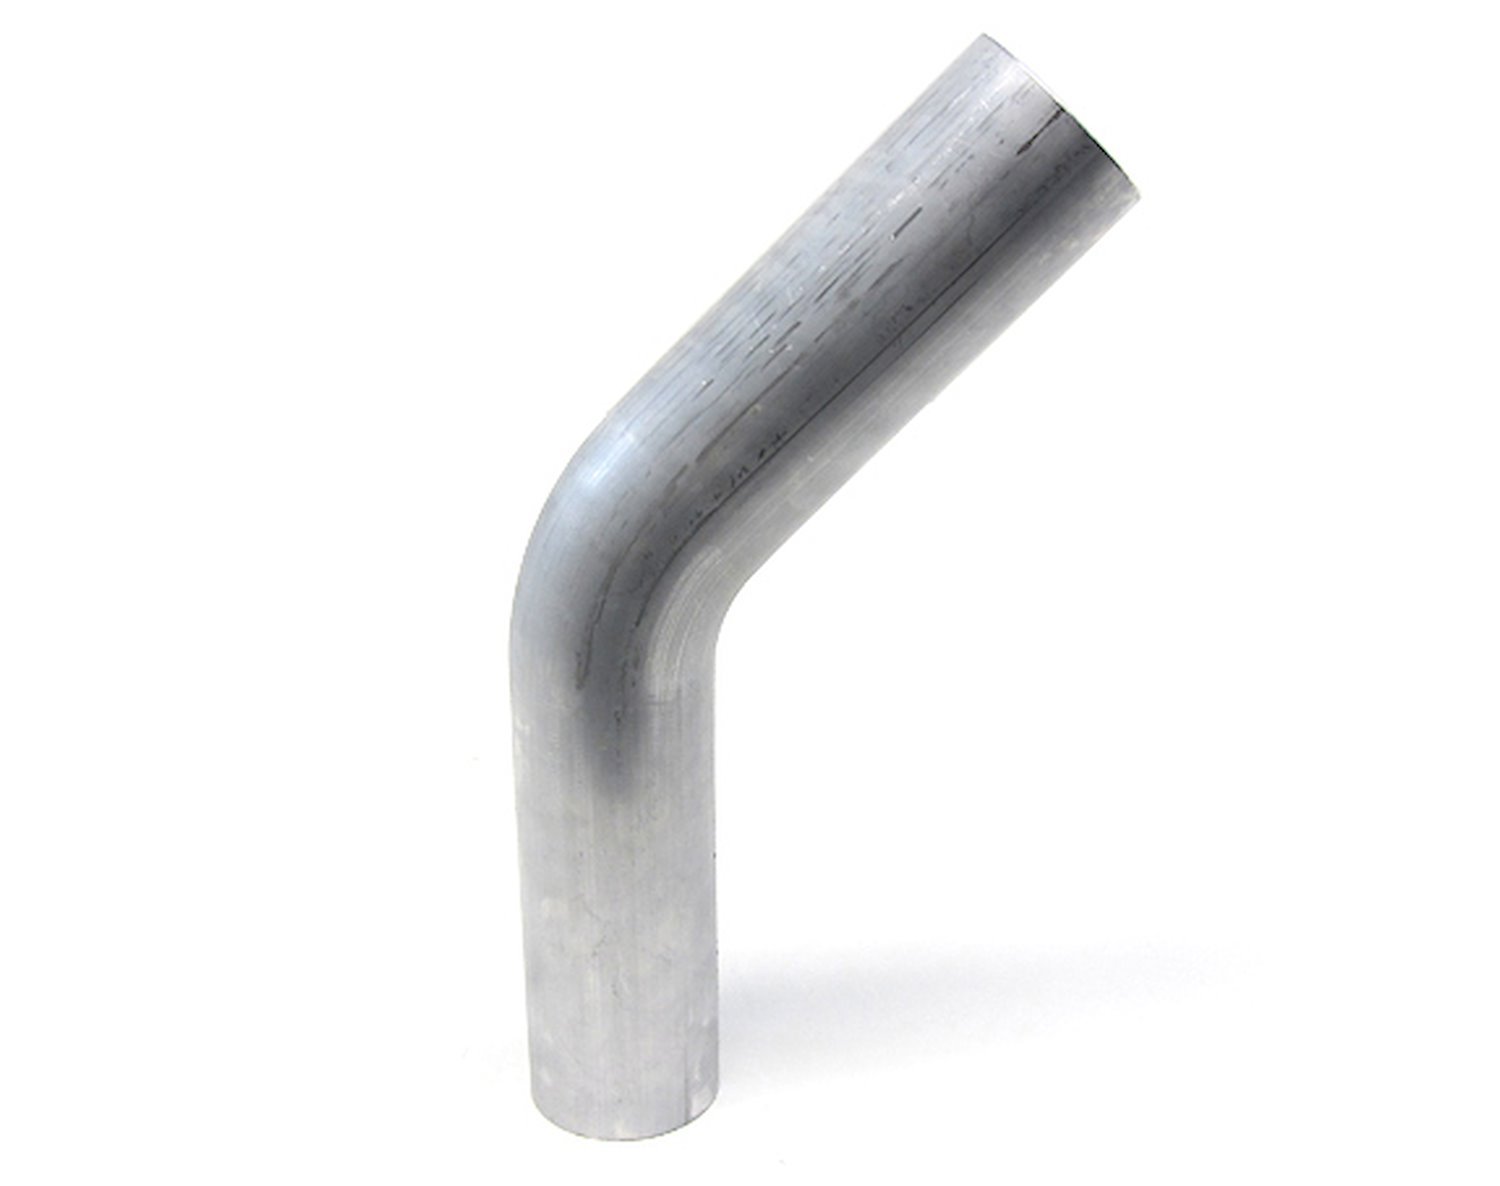 AT45-350-CLR-35 Aluminum Elbow Tube, 6061 Aluminum, 45-Degree Bend Elbow Tubing, 3-1/2 in. OD, Tight Radius, 3-1/2 in. CLR